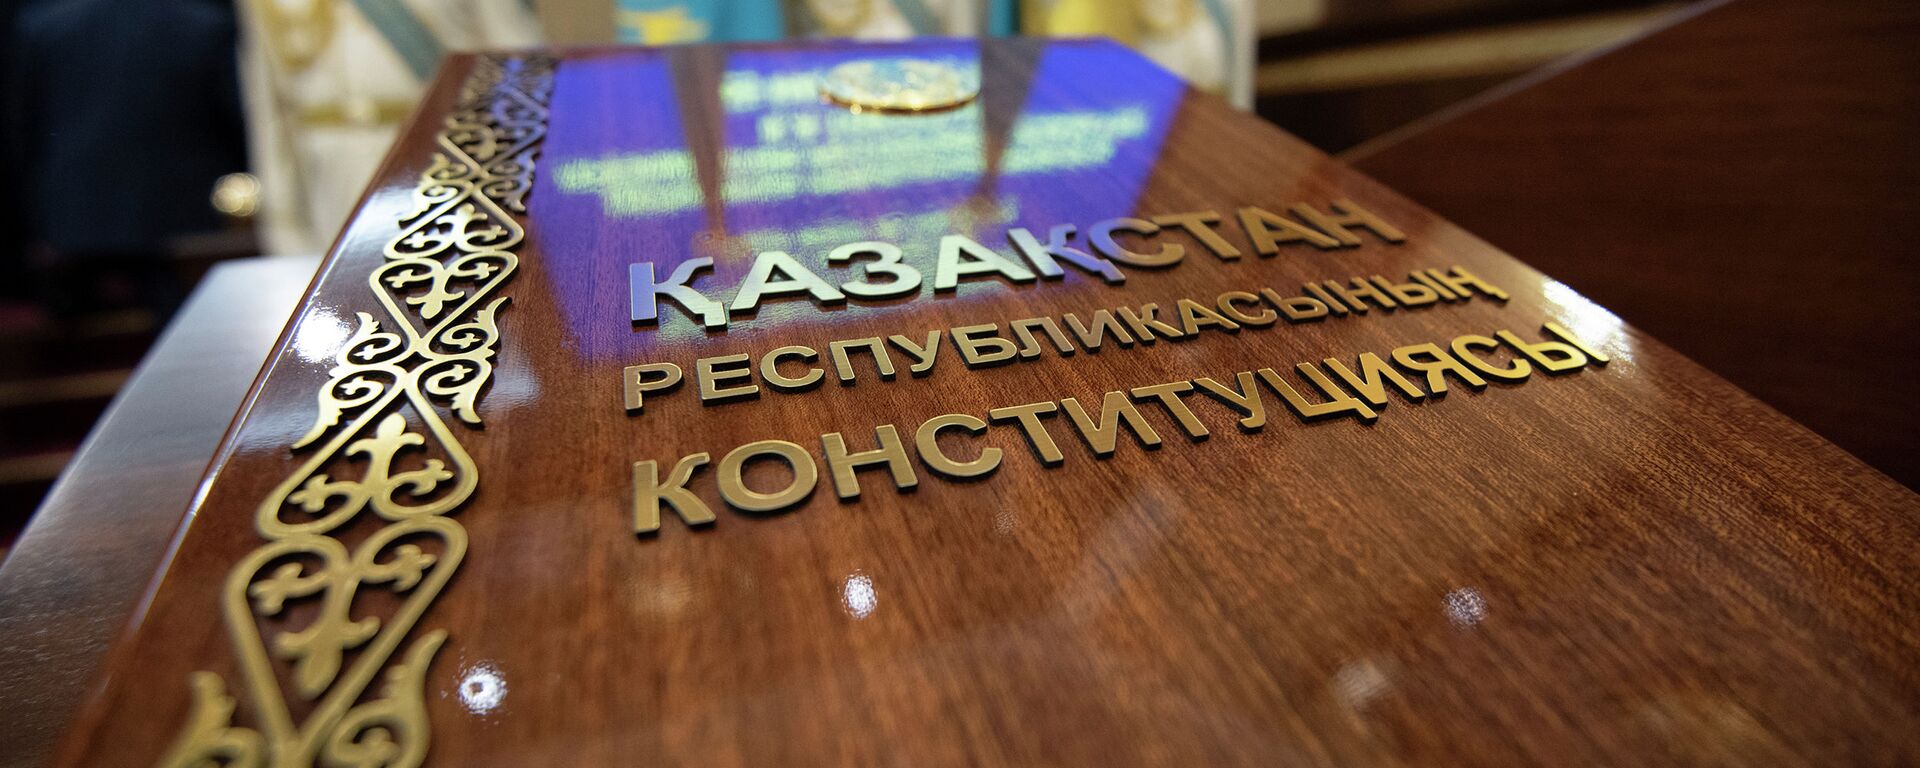 Конституция Республики Казахстан - Sputnik Казахстан, 1920, 30.08.2019